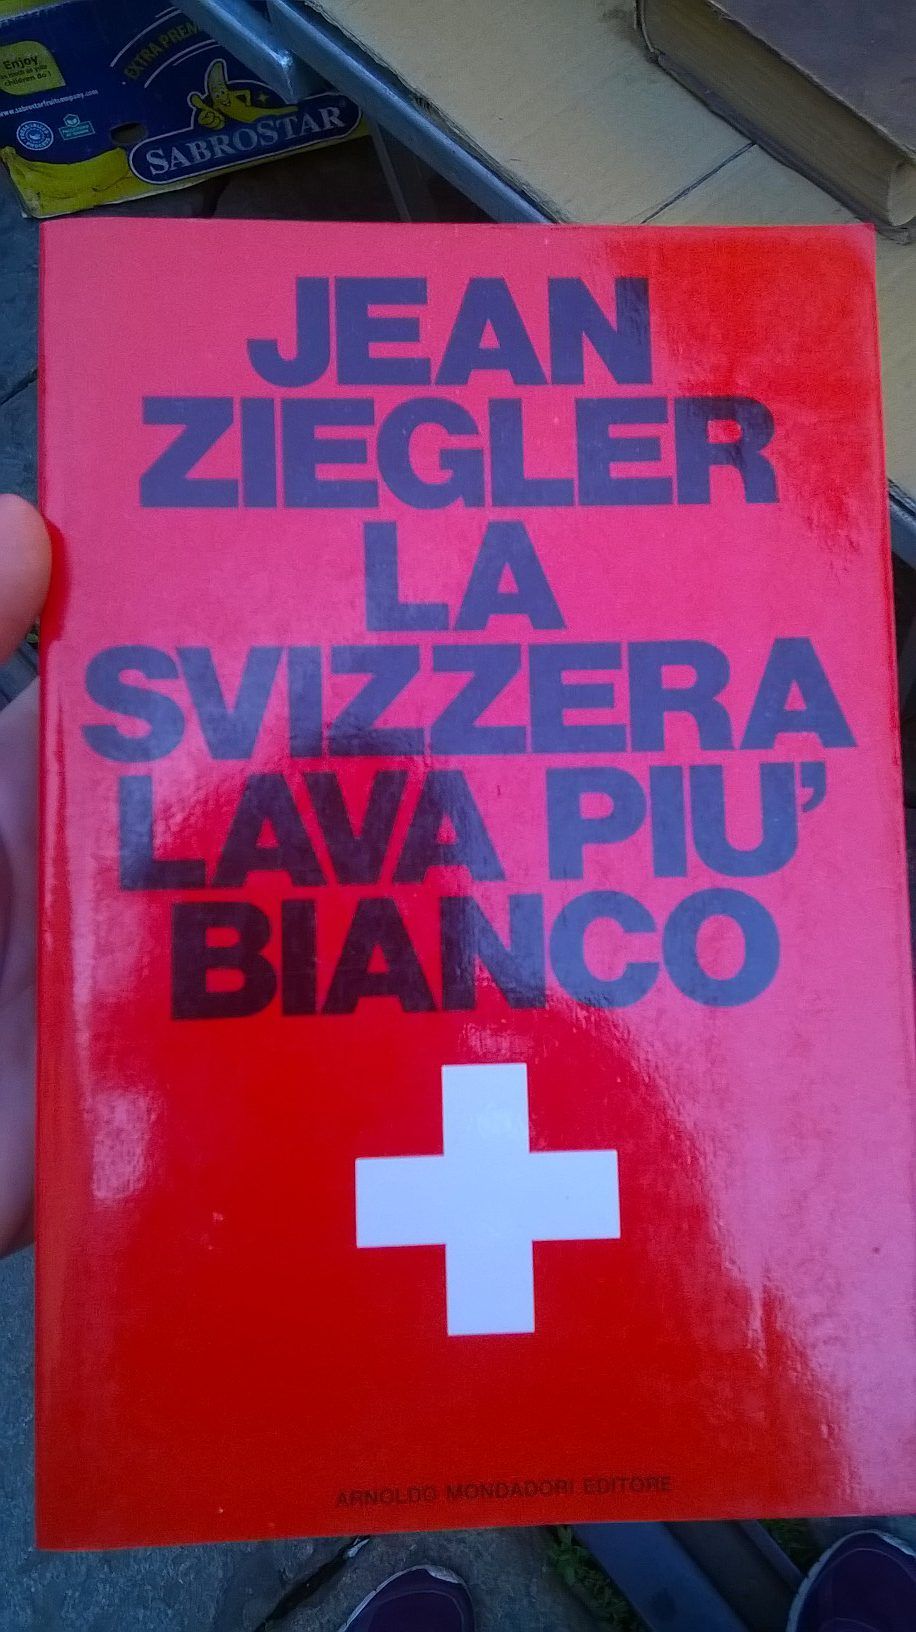 “La Svizzera lava più bianco” di Jean Ziegler al mercatino